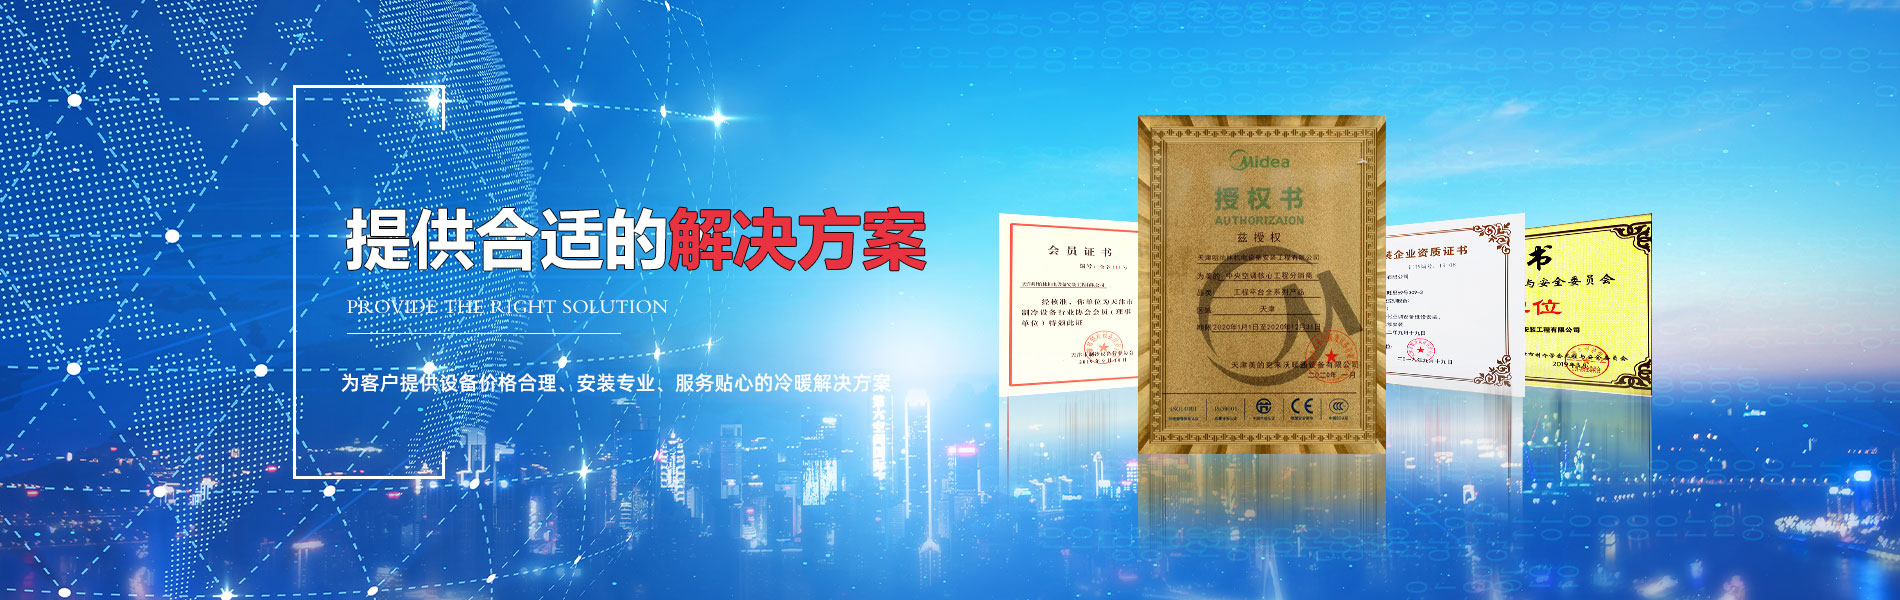 天津明怡林机电设备安装工程有限公司